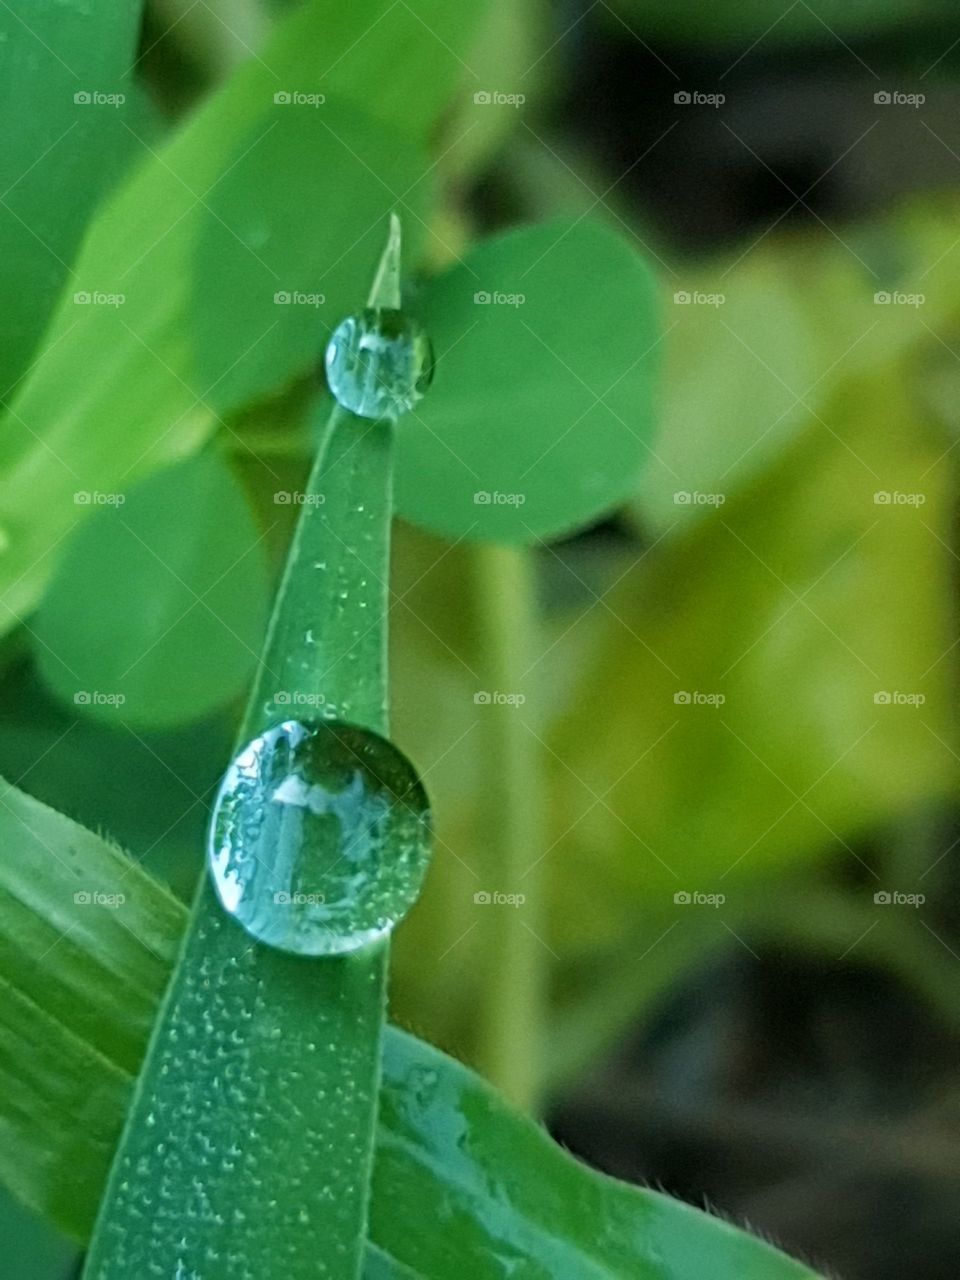 Dewdrops like tears